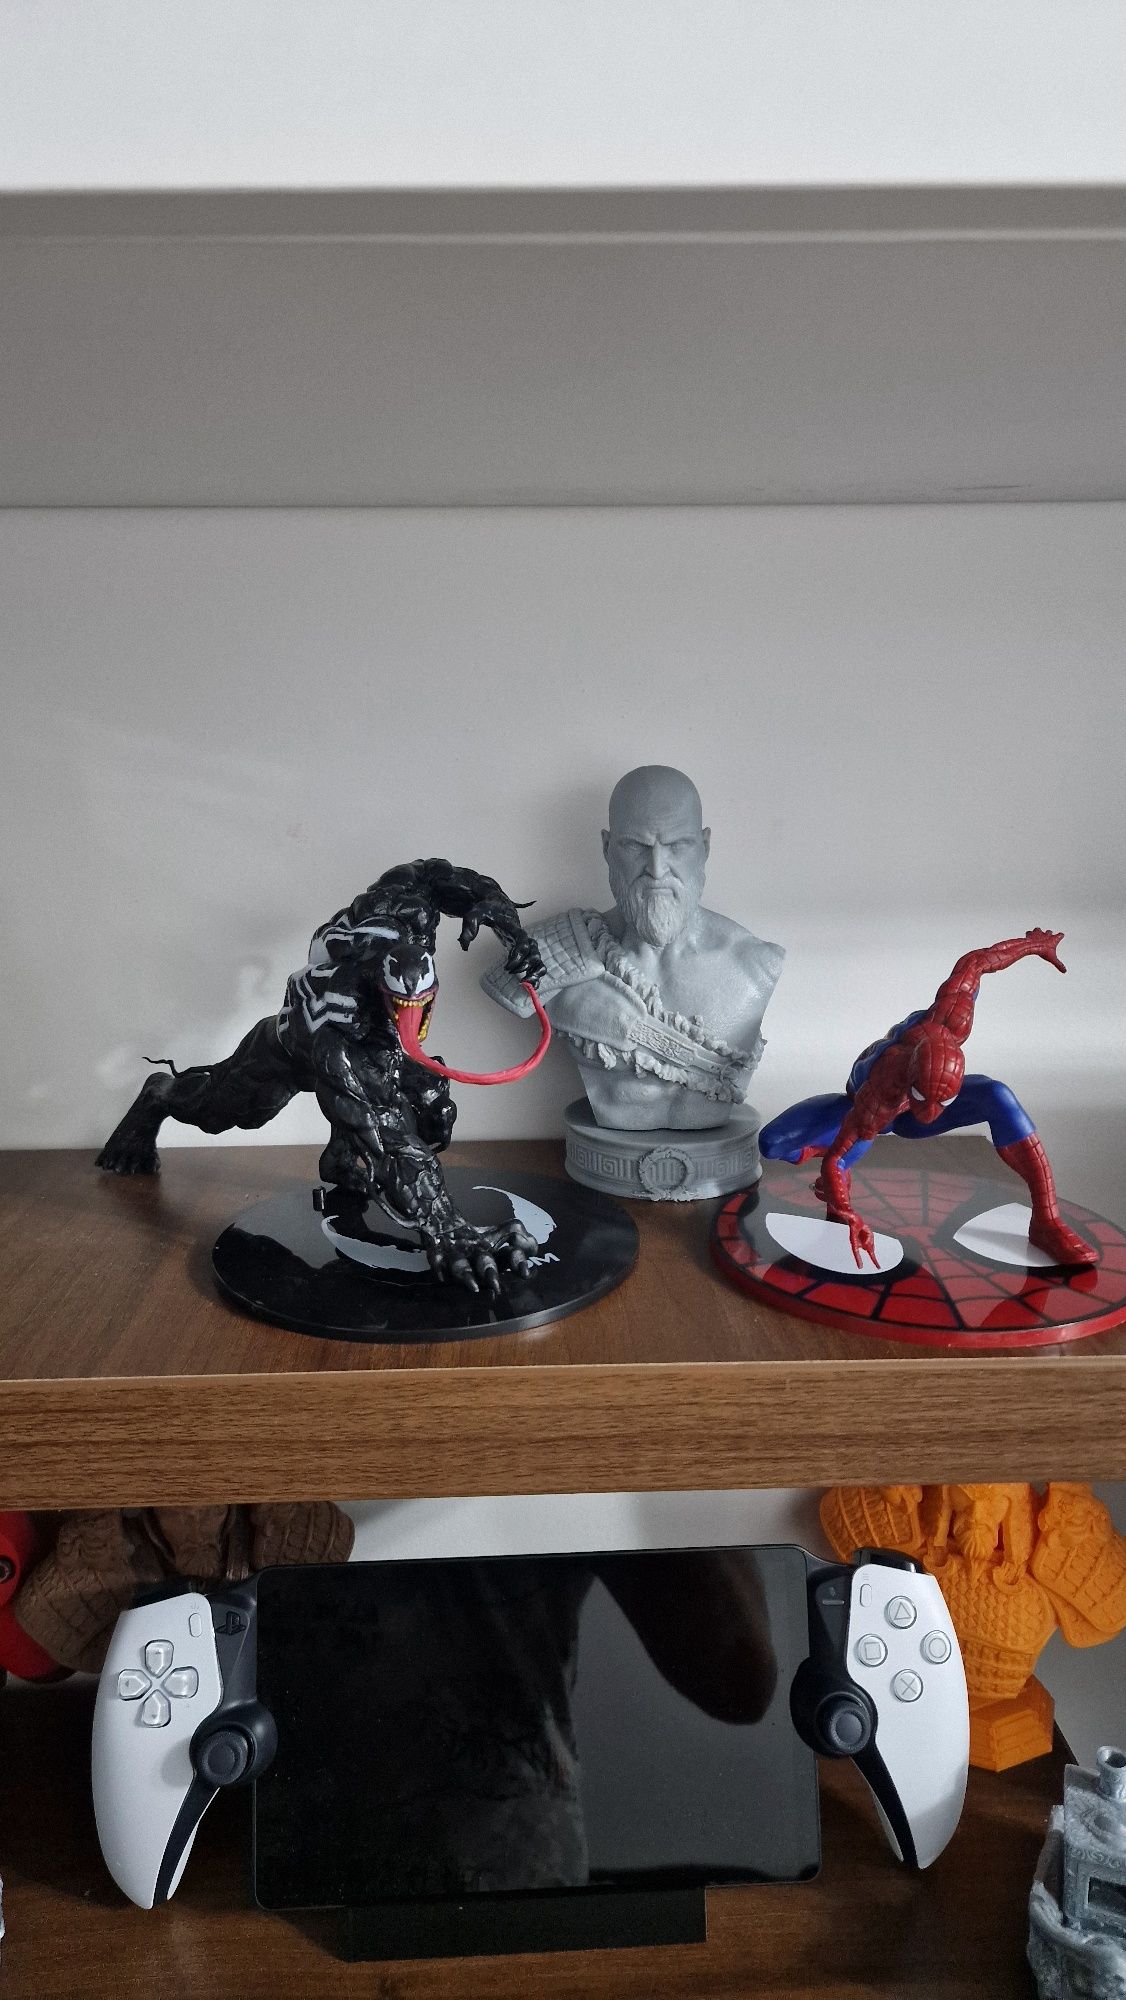 Spider-Man & Venom